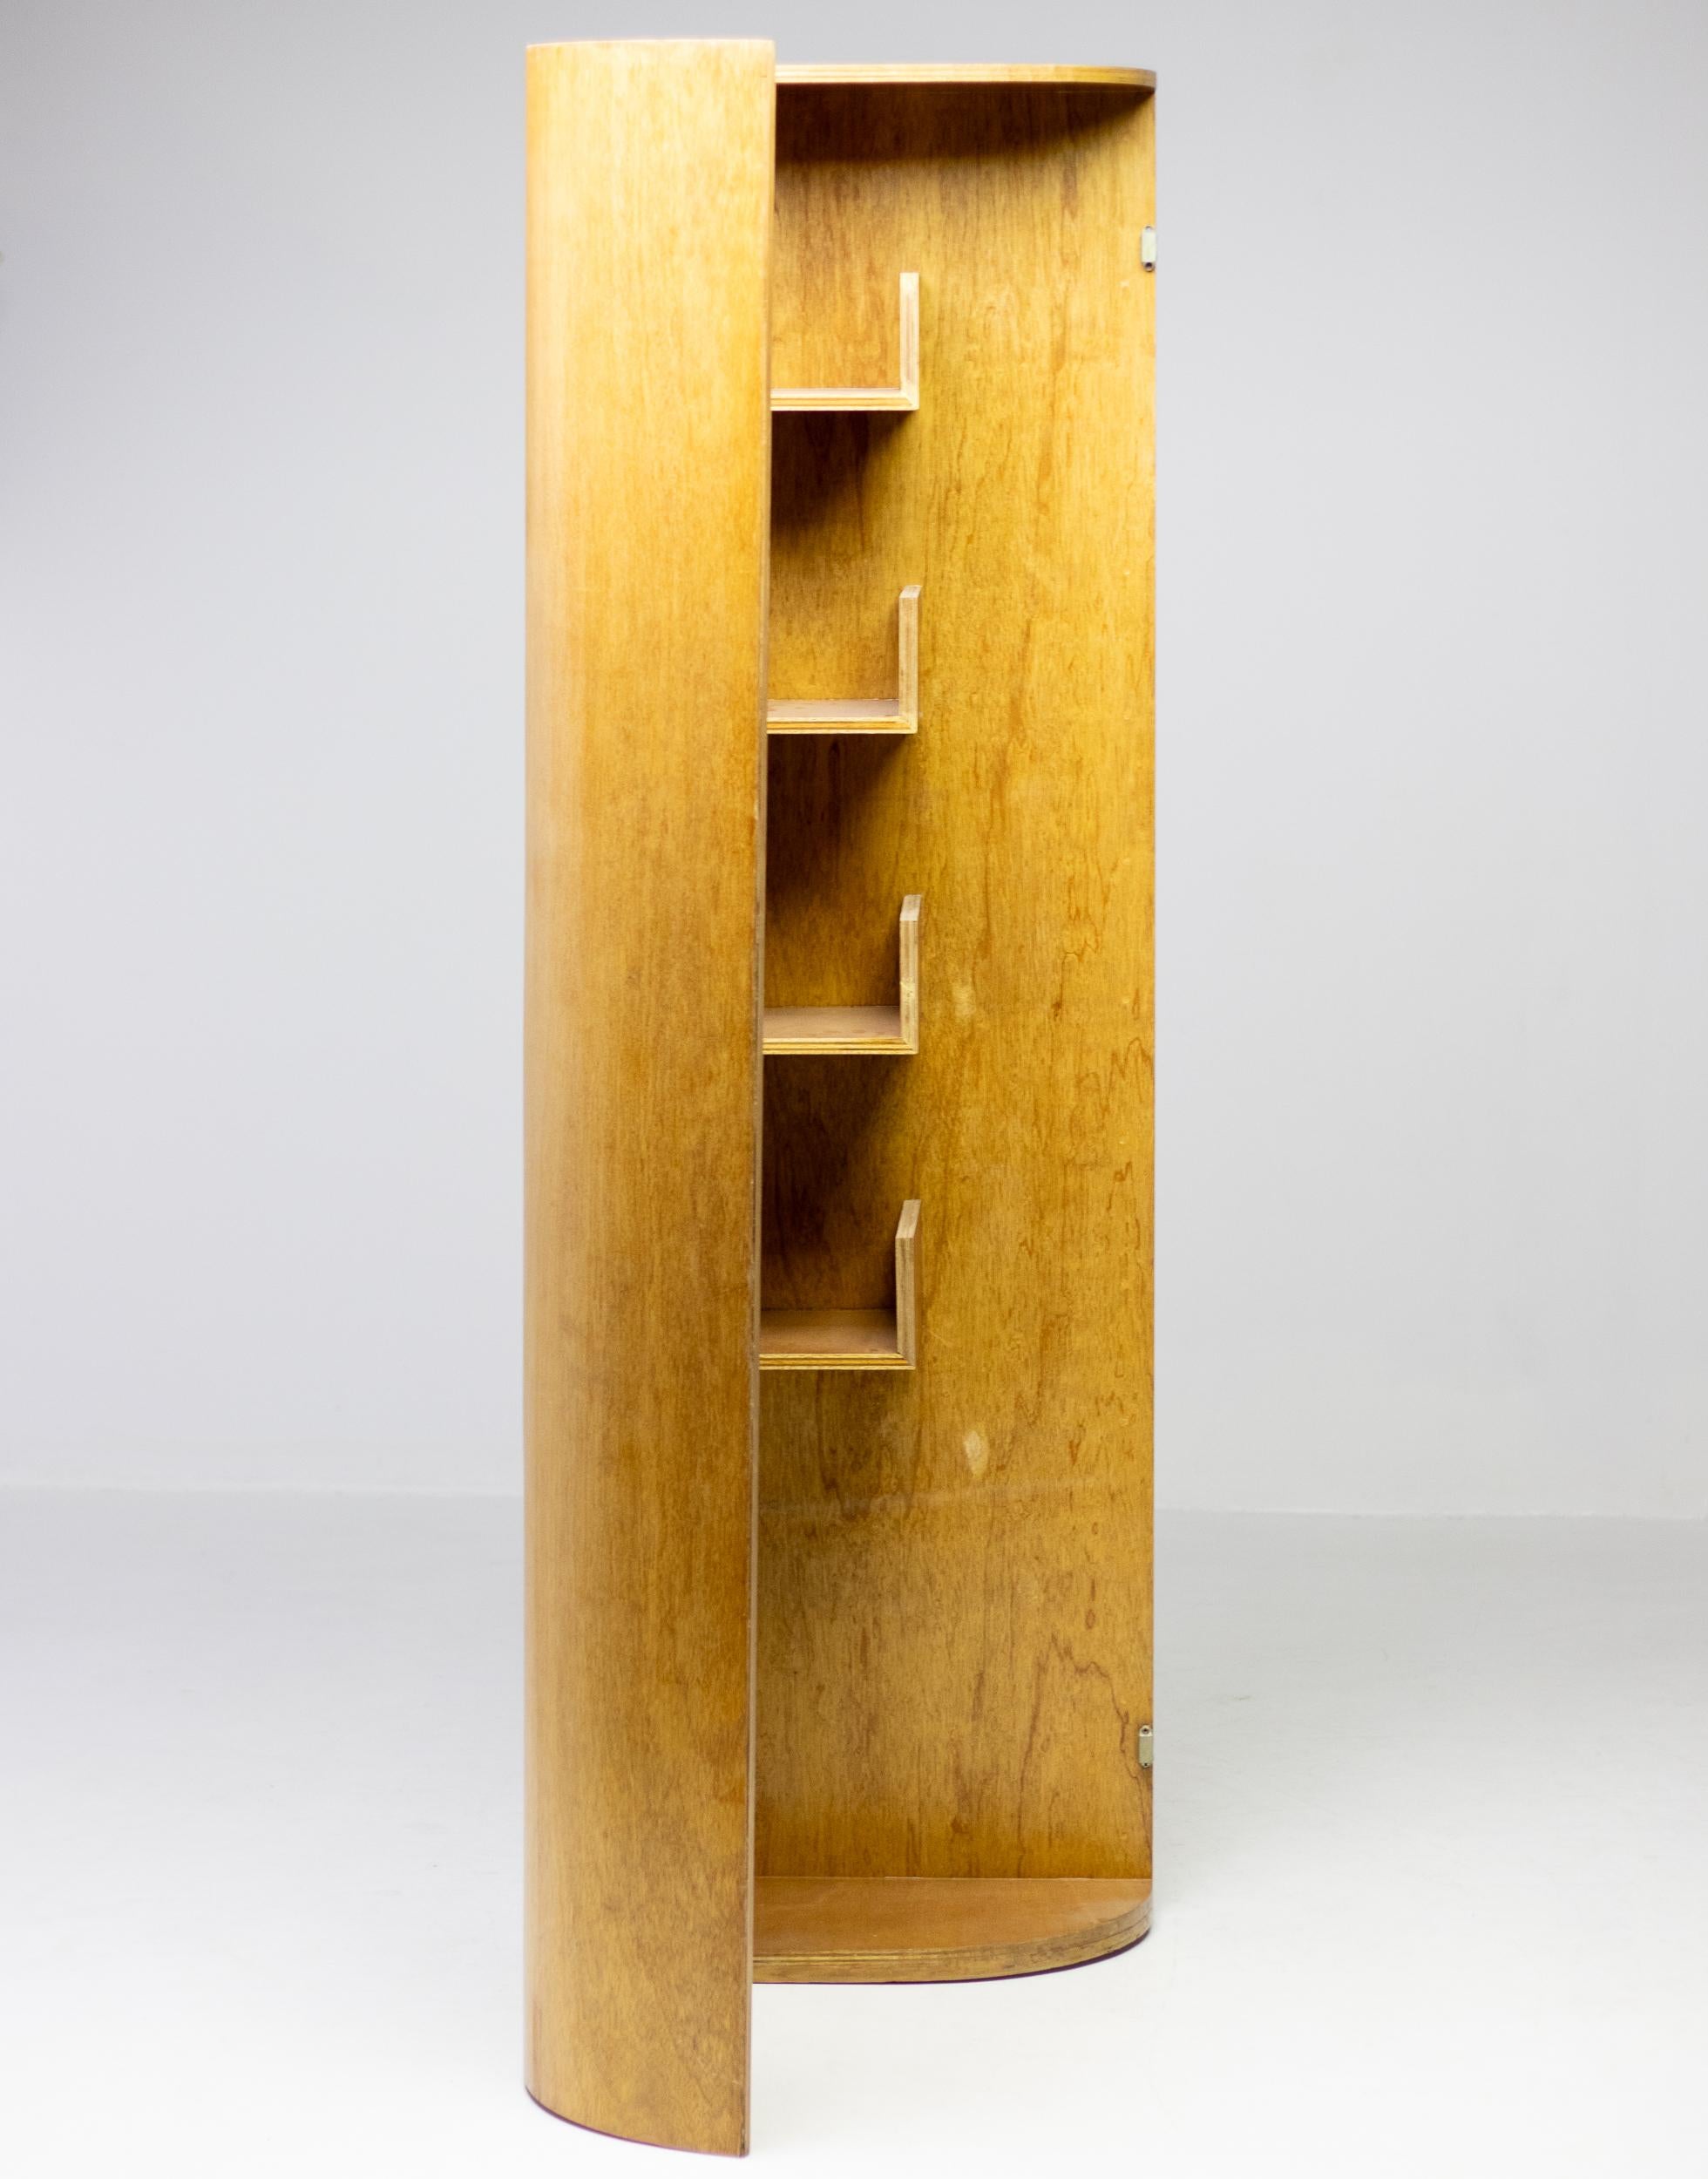 Aldo van Eyck Corner Cabinet In Good Condition For Sale In Dronten, NL